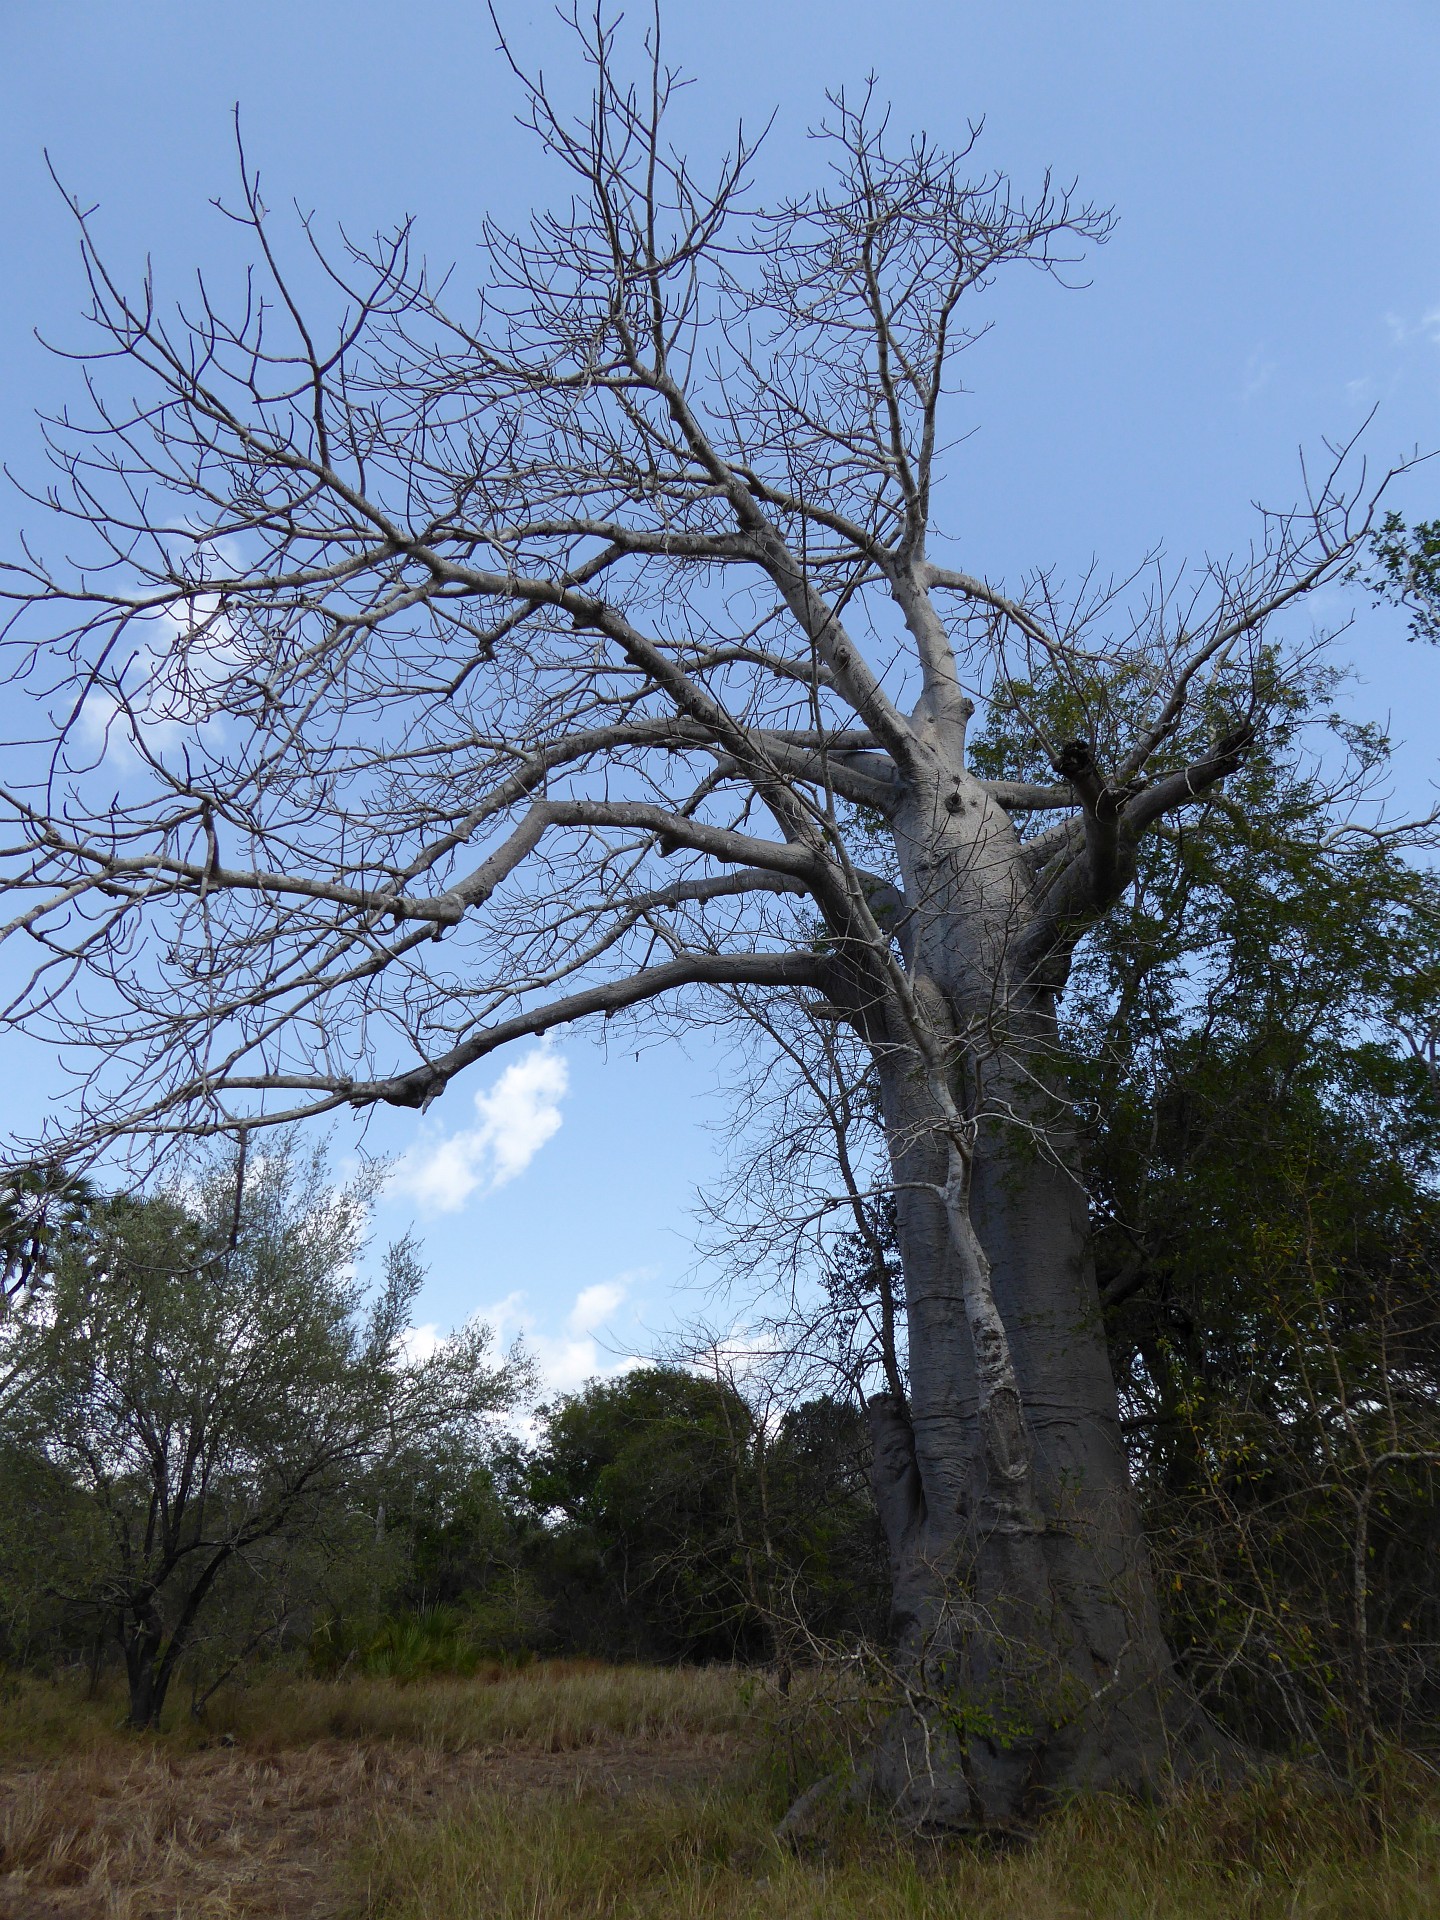 Sogar Baobabs gedeihen hier, obwohl der Boden in der Regenzeit zu Sumpf wird.